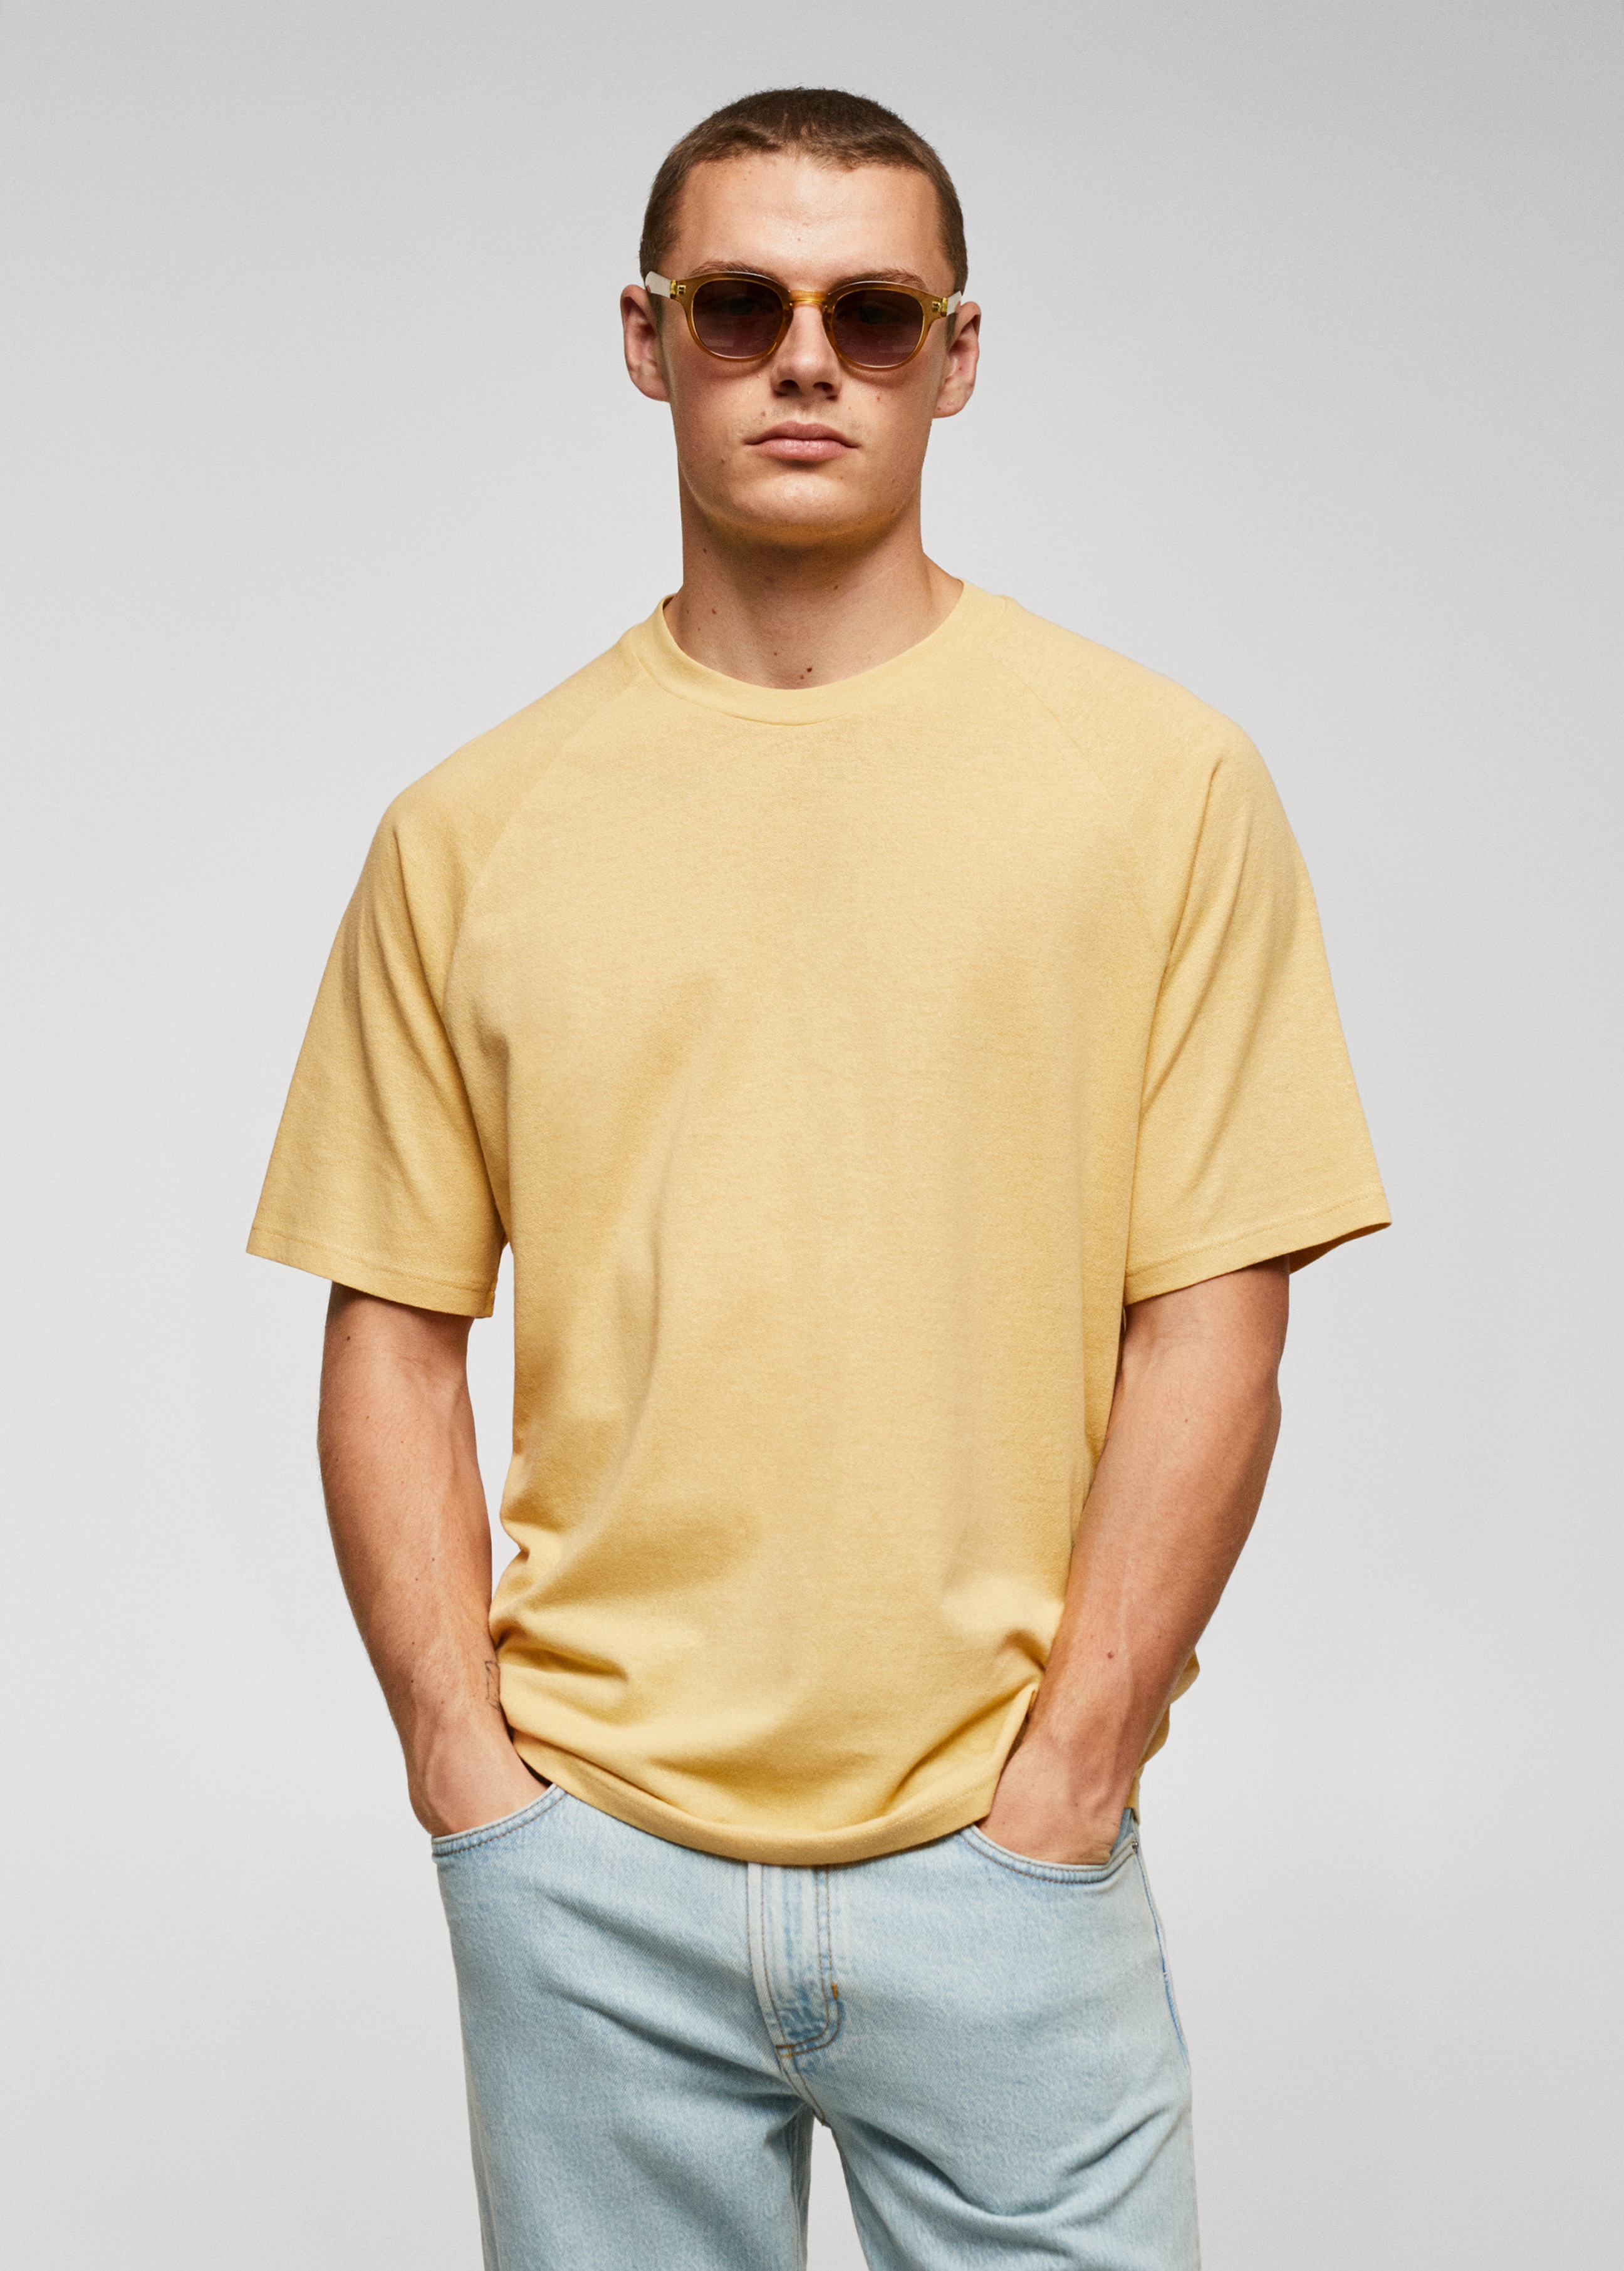 Textured cotton-linen t-shirt - Medium plane